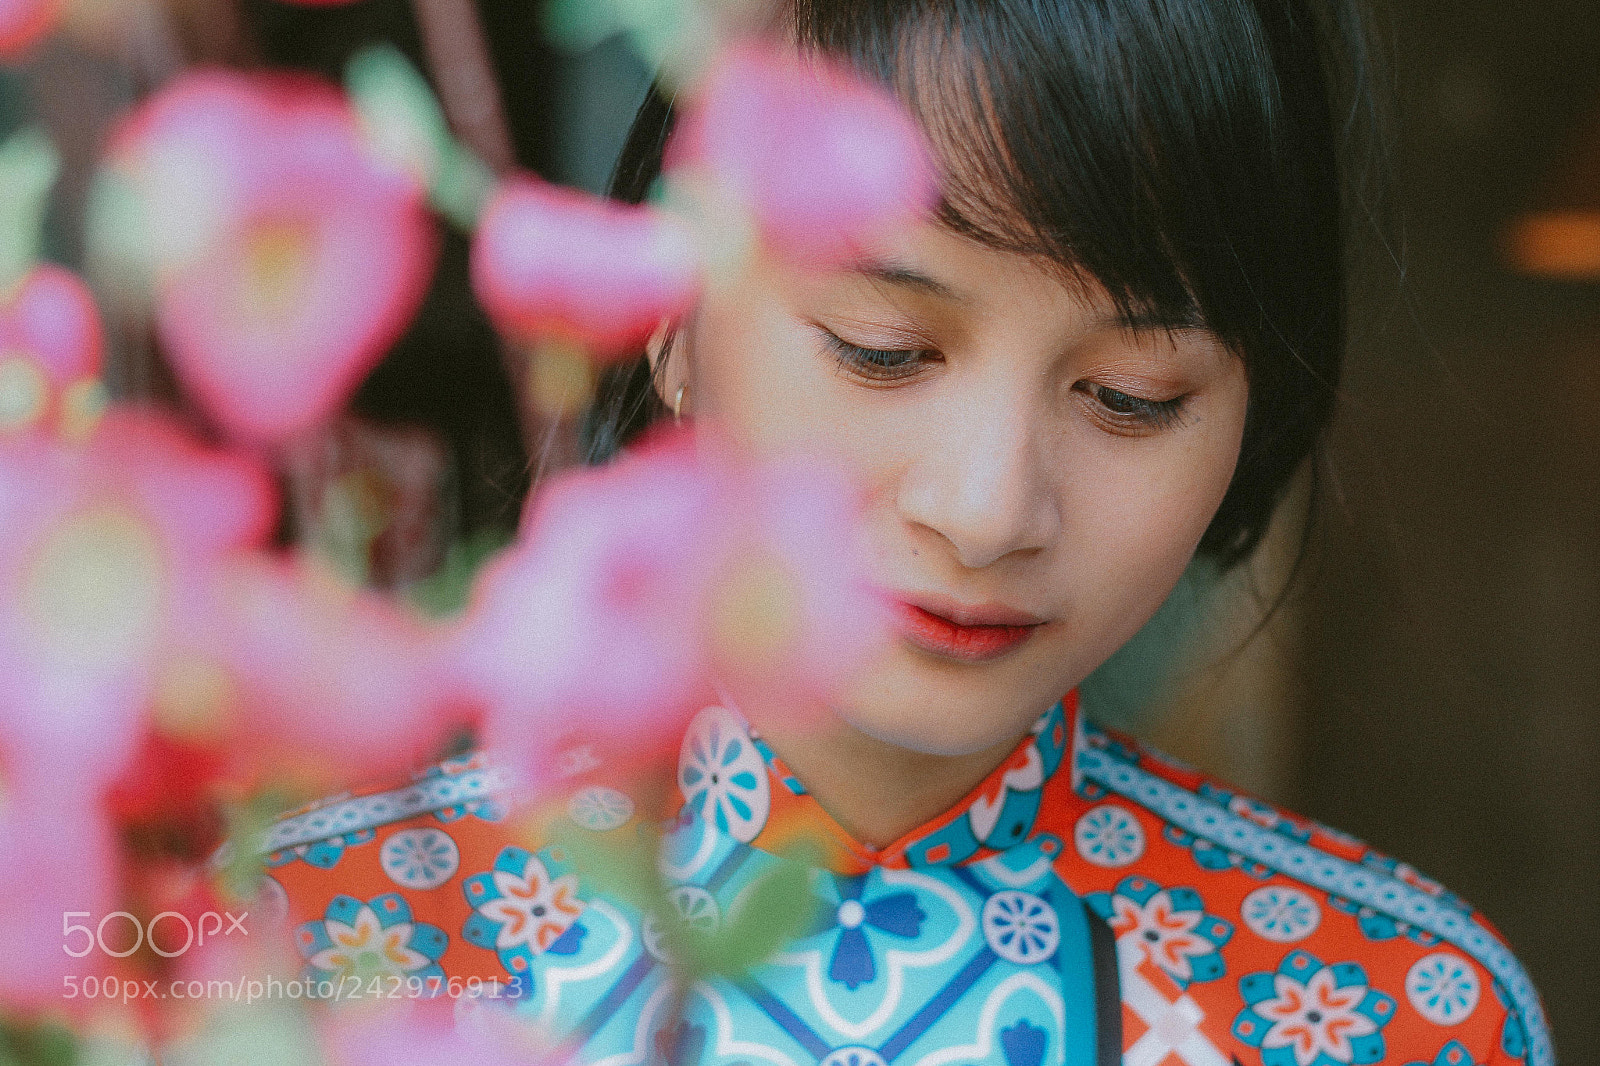 Canon EOS 60D sample photo. A vietnamese woman in photography